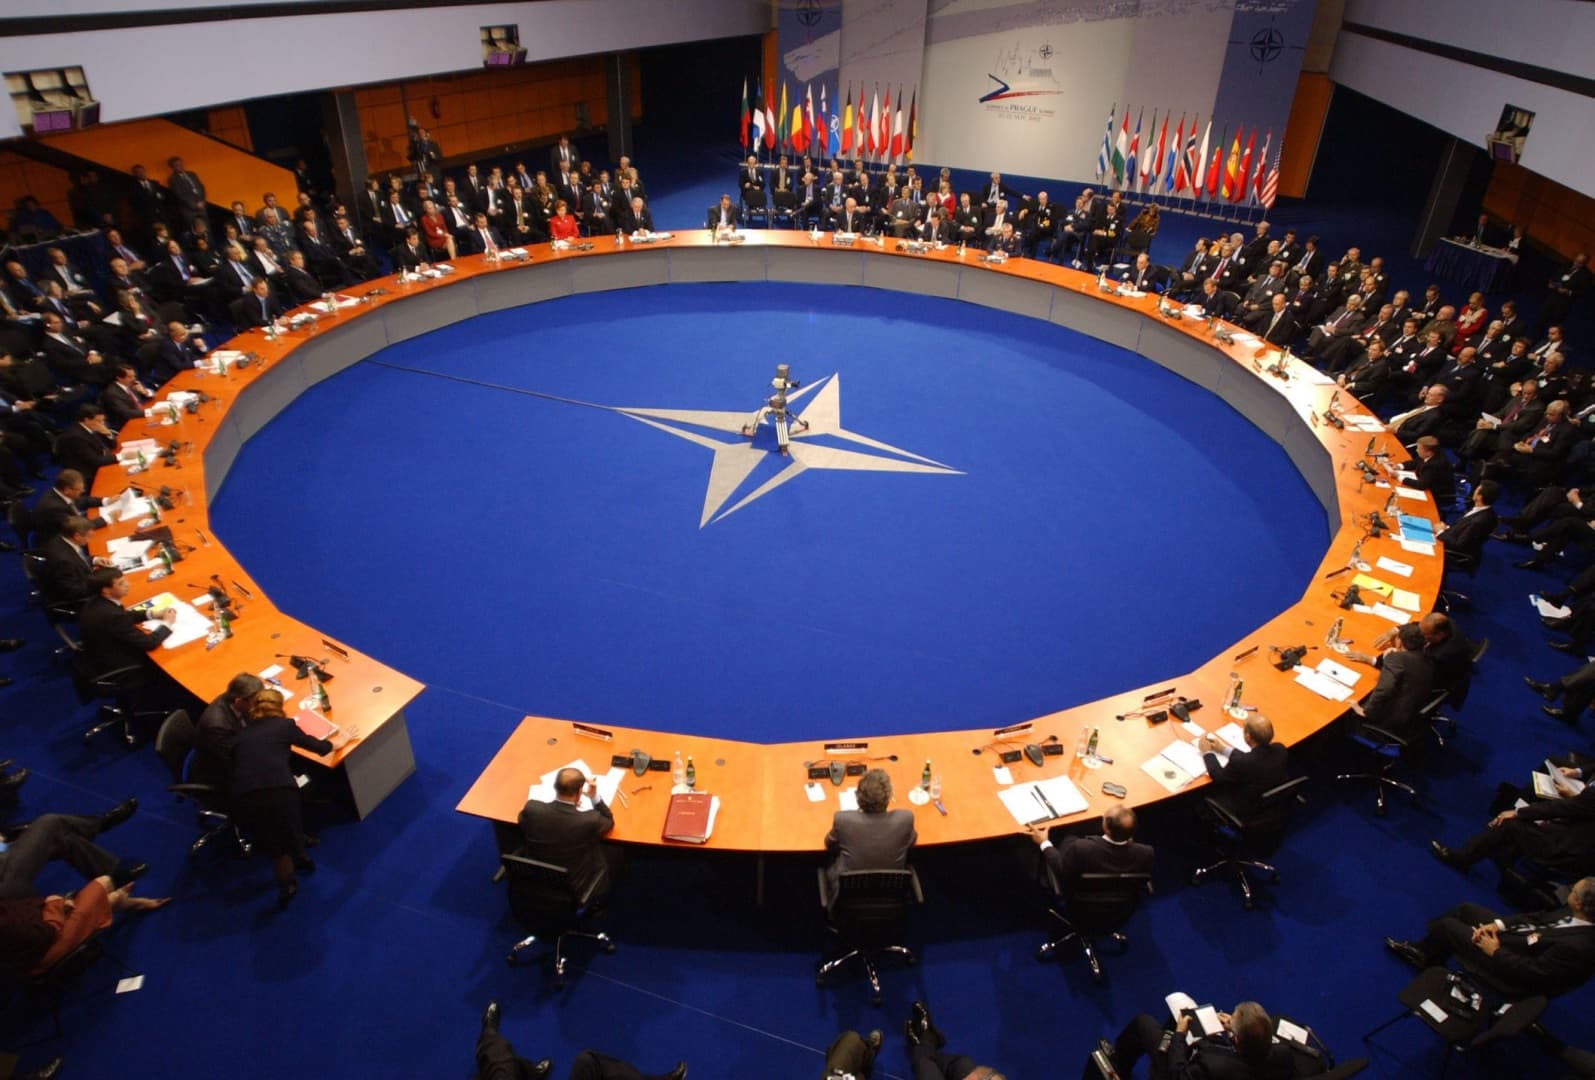 Az amerikai szenátus megszavazta, hogy Montenegró NATO-tagállam legyen